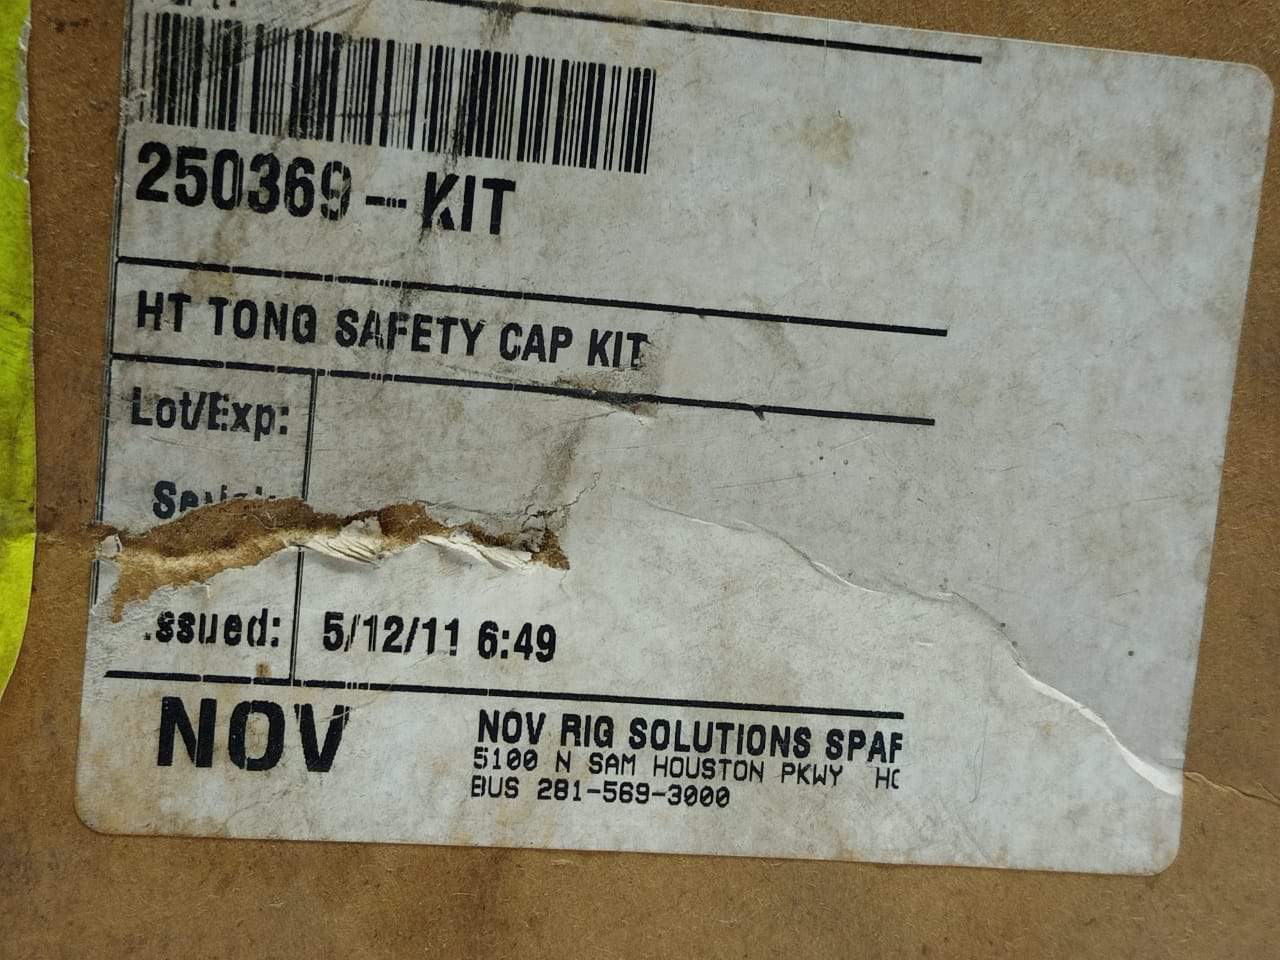 NOV 250369 HT Tong Safety Cap Kit